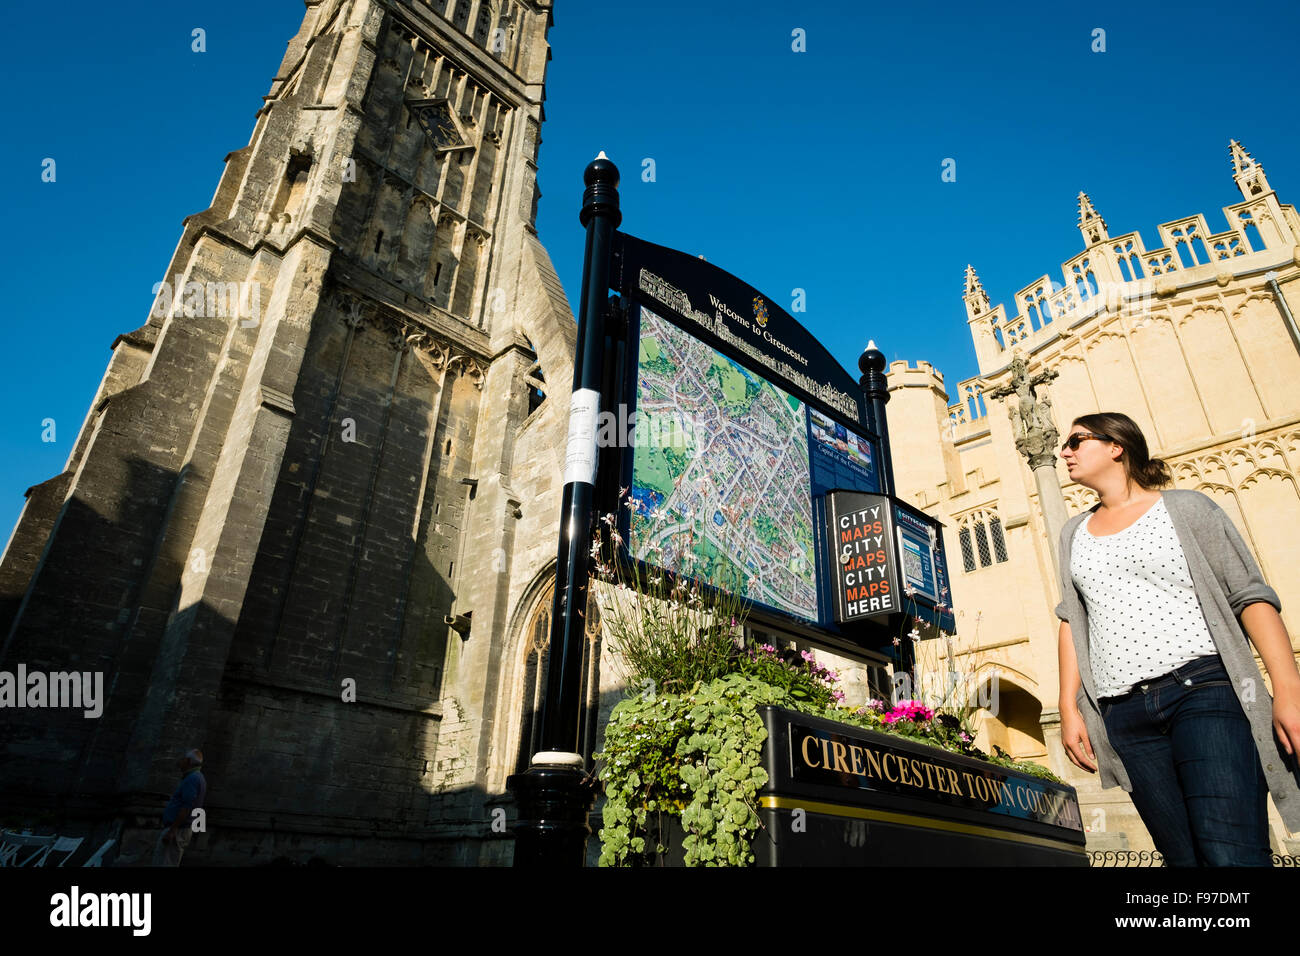 Une femme à la recherche à un site d'information touristique à l'extérieur de l'église de Saint-Jean-Baptiste , église paroissiale dans l'Église d'Angleterre à Cirencester, Gloucestershire, England, UK Banque D'Images